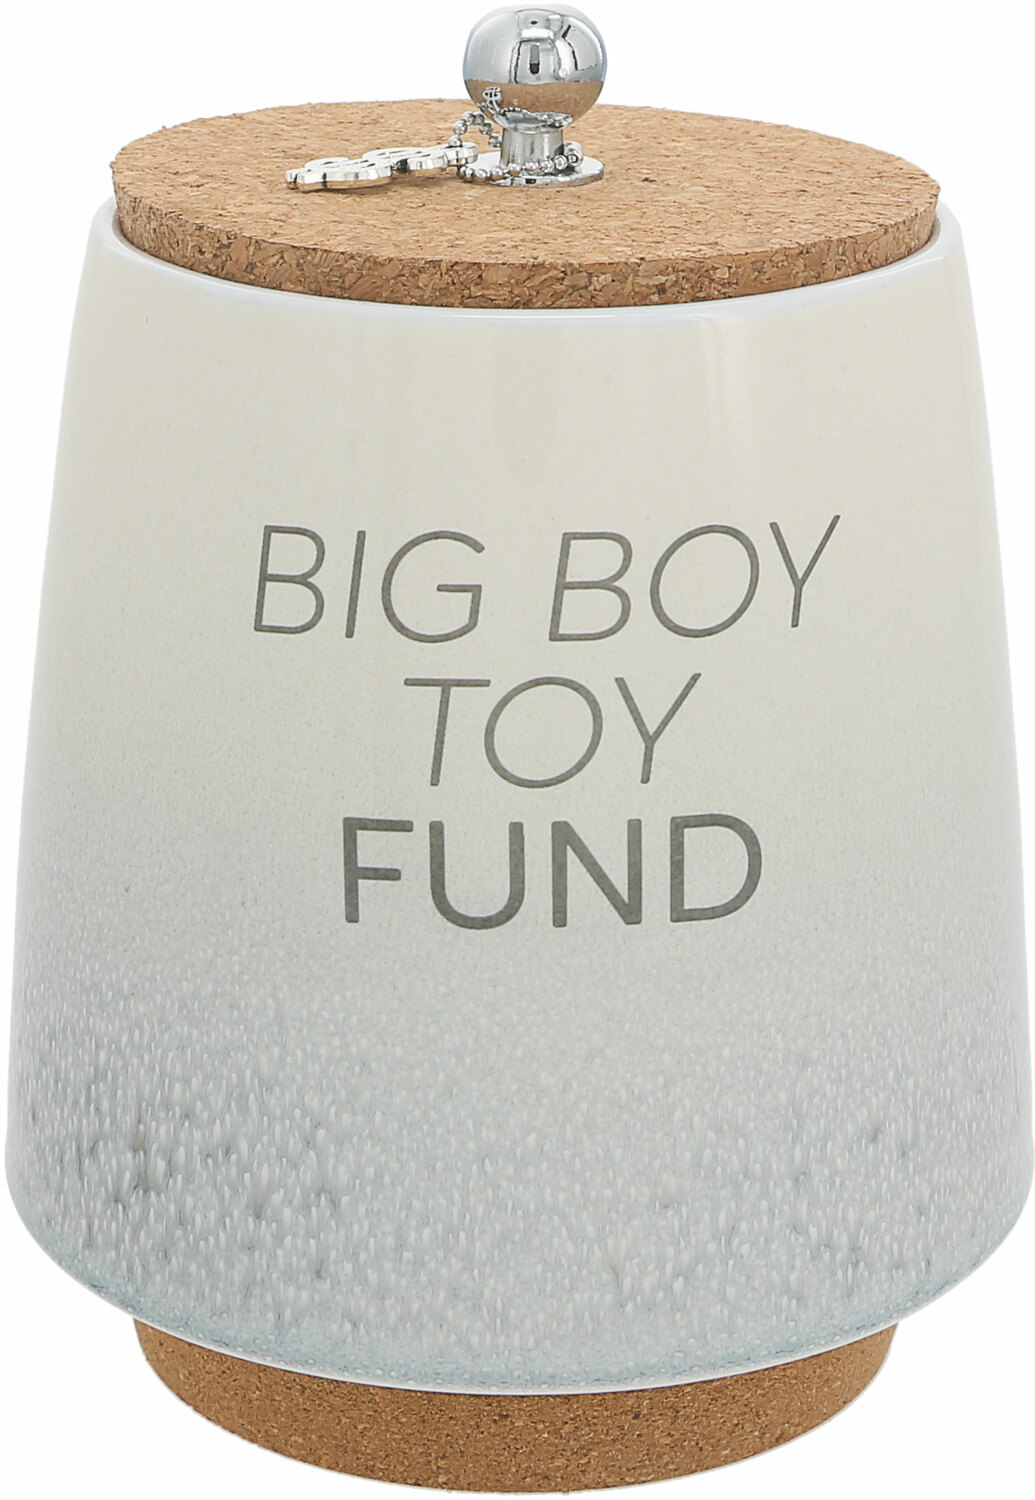 Big Boy Toy by So Much Fun-d - Big Boy Toy - 6.5" Ceramic Savings Bank